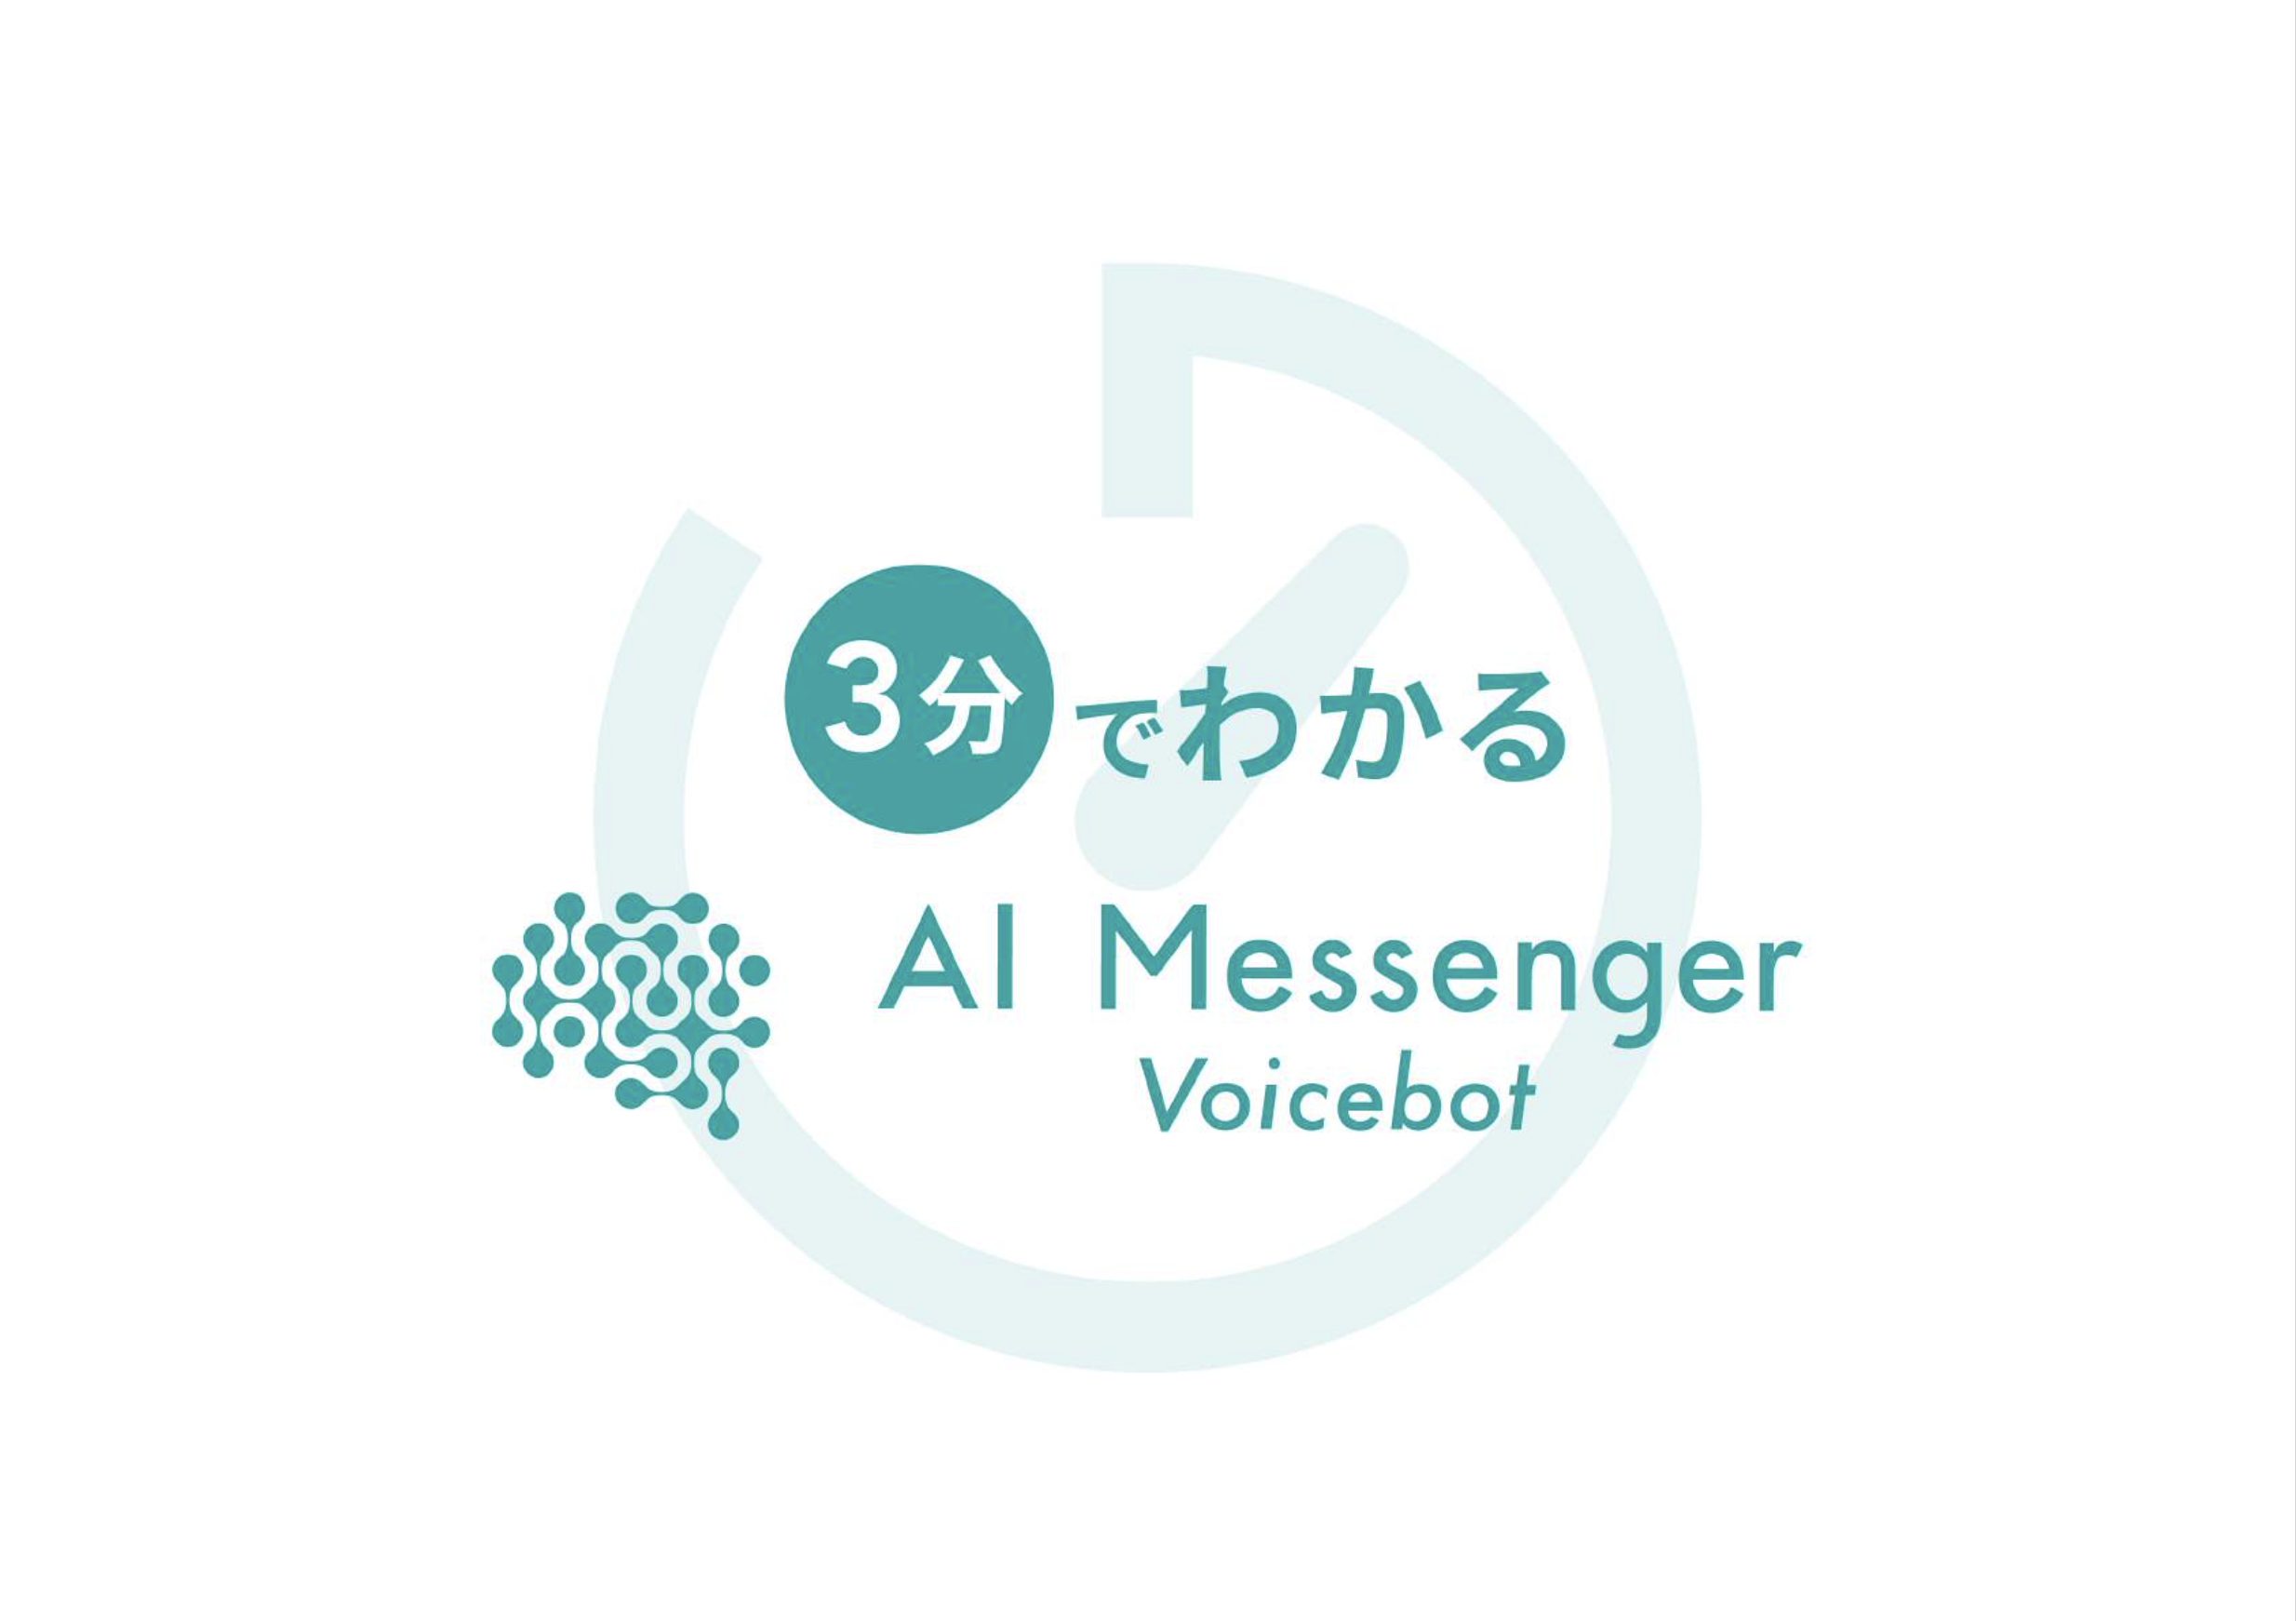 3分で分かるAI Messenger Voicebot